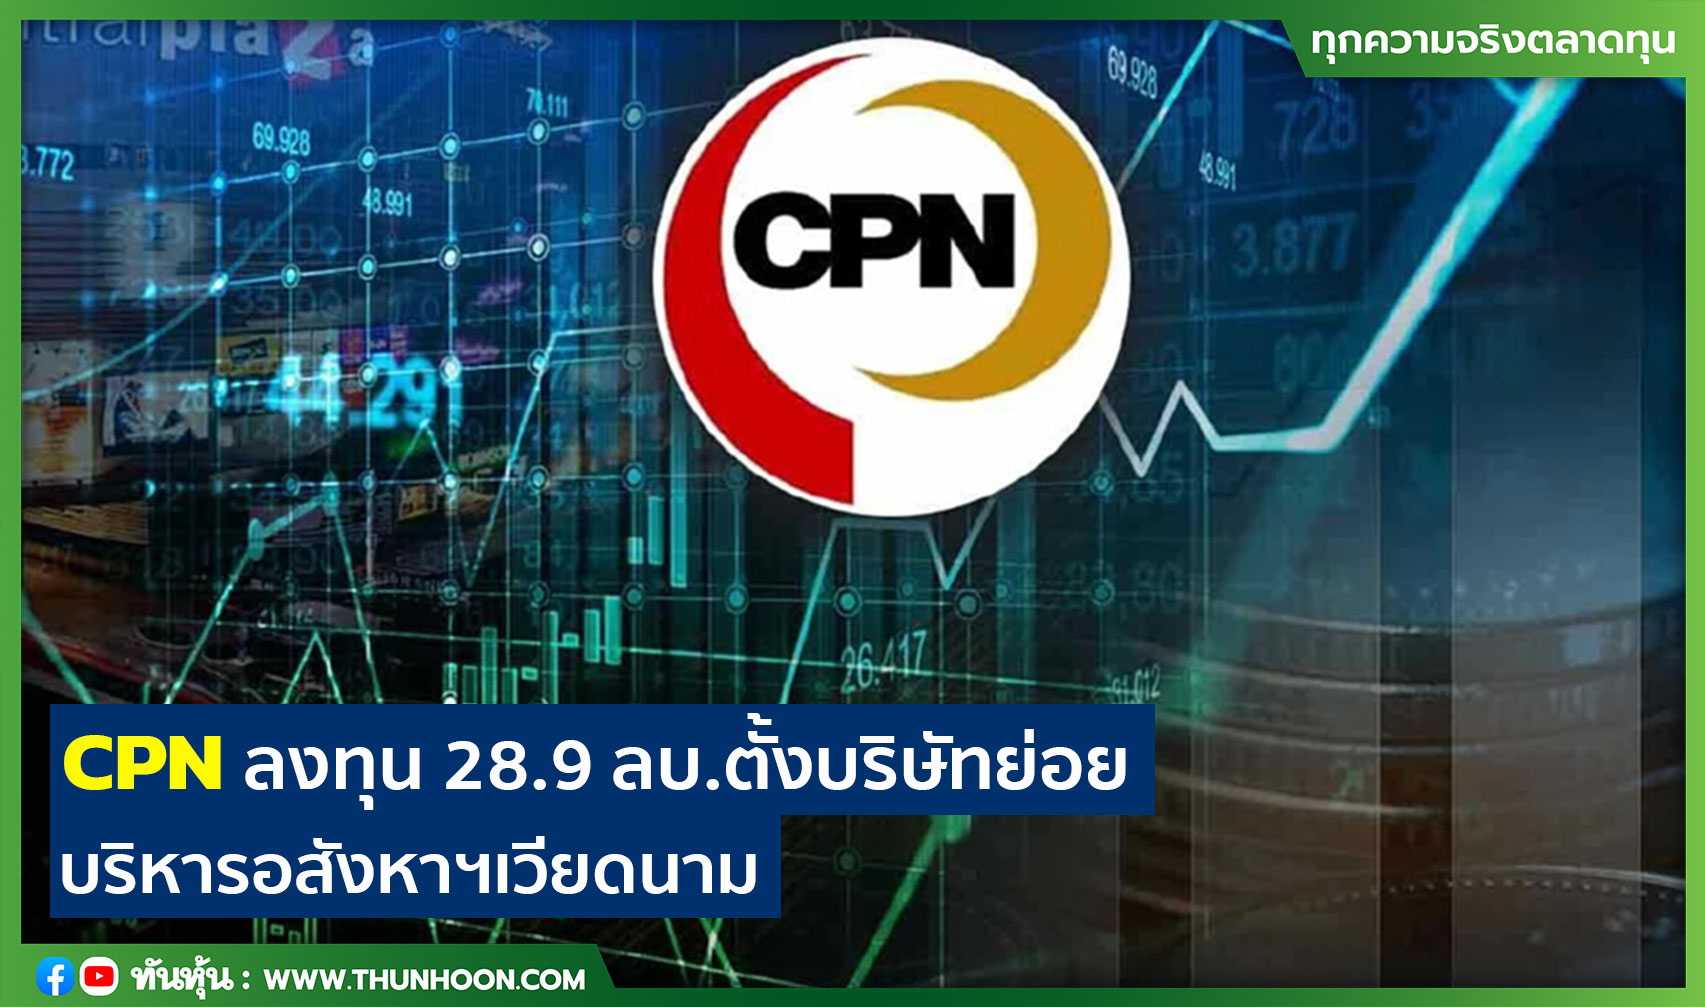 CPN ลงทุน 28.9 ลบ.ตั้งบริษัทย่อย บริหารอสังหาฯ ในเวียดนาม